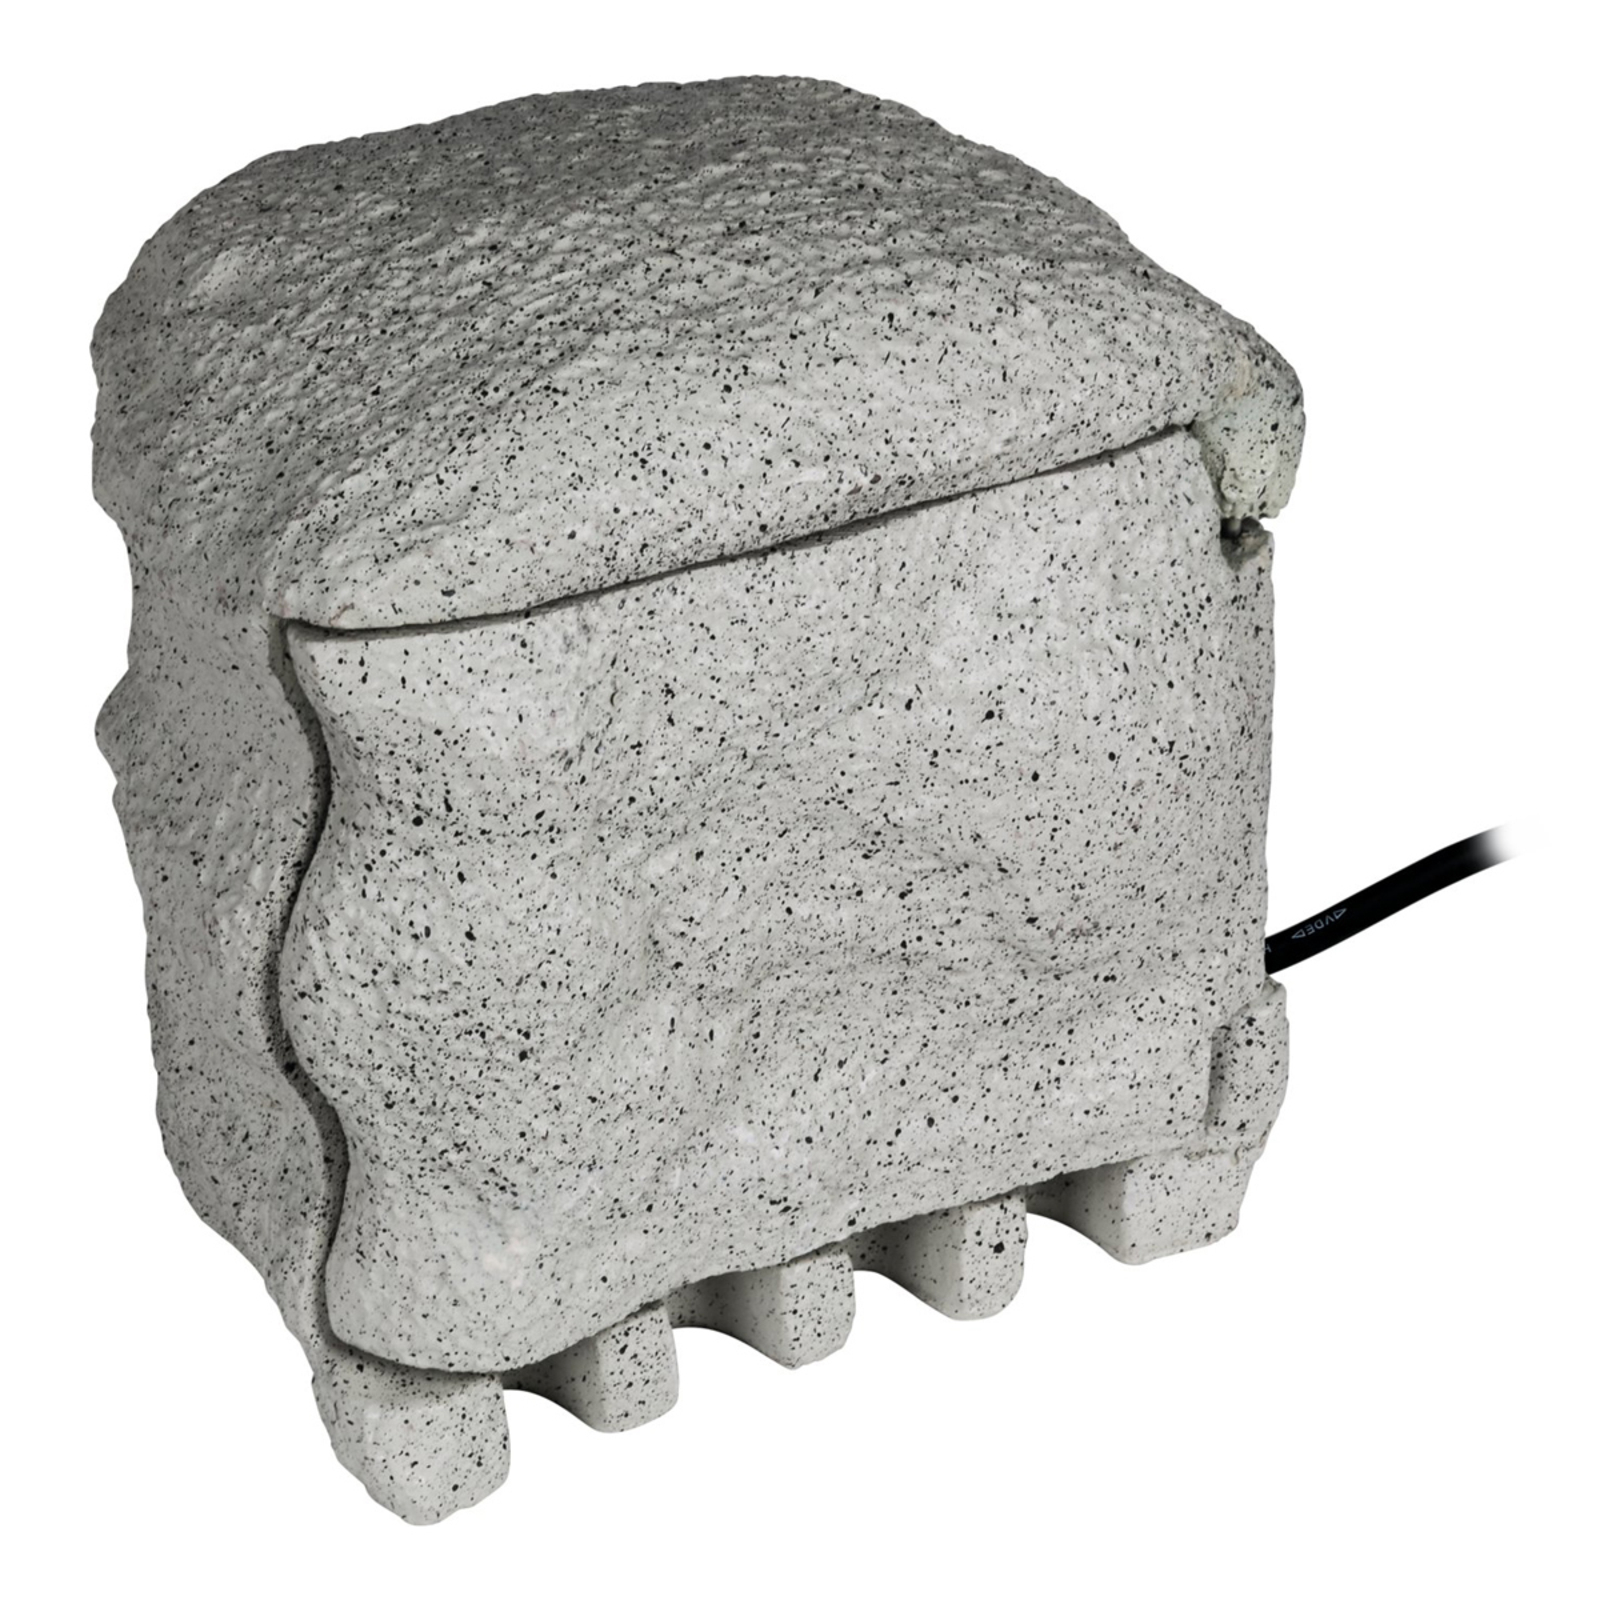 Energieverteiler Piedra in Granitoptik für außen